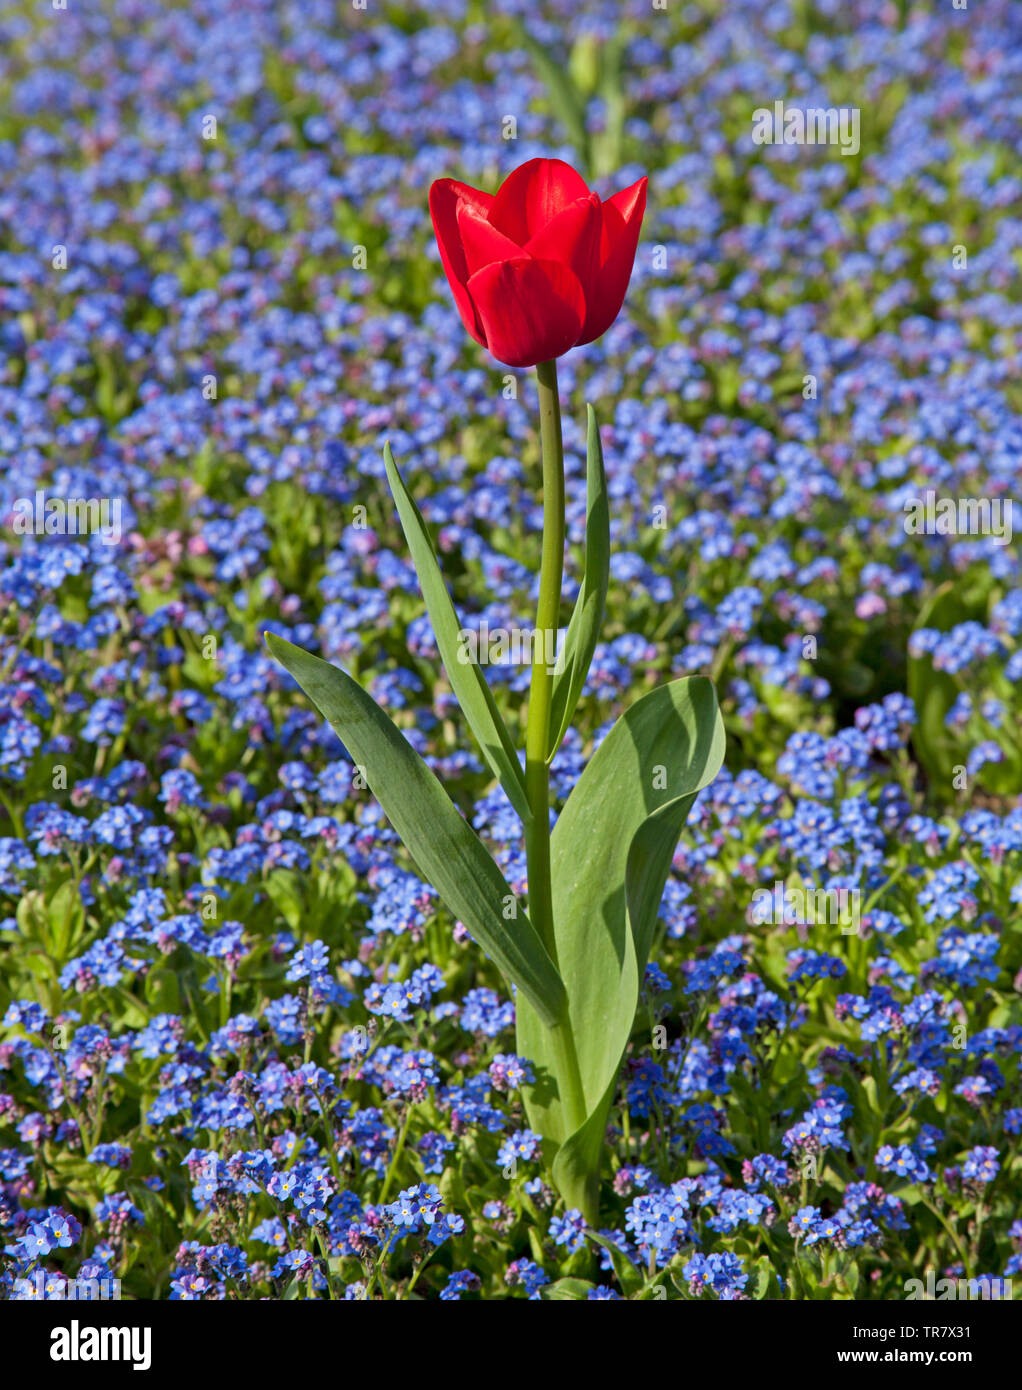 Red tulip aisladas contra un fondo de color azul de flores, flor azul, en Canterbury, Inglaterra, Reino Unido. Foto de stock